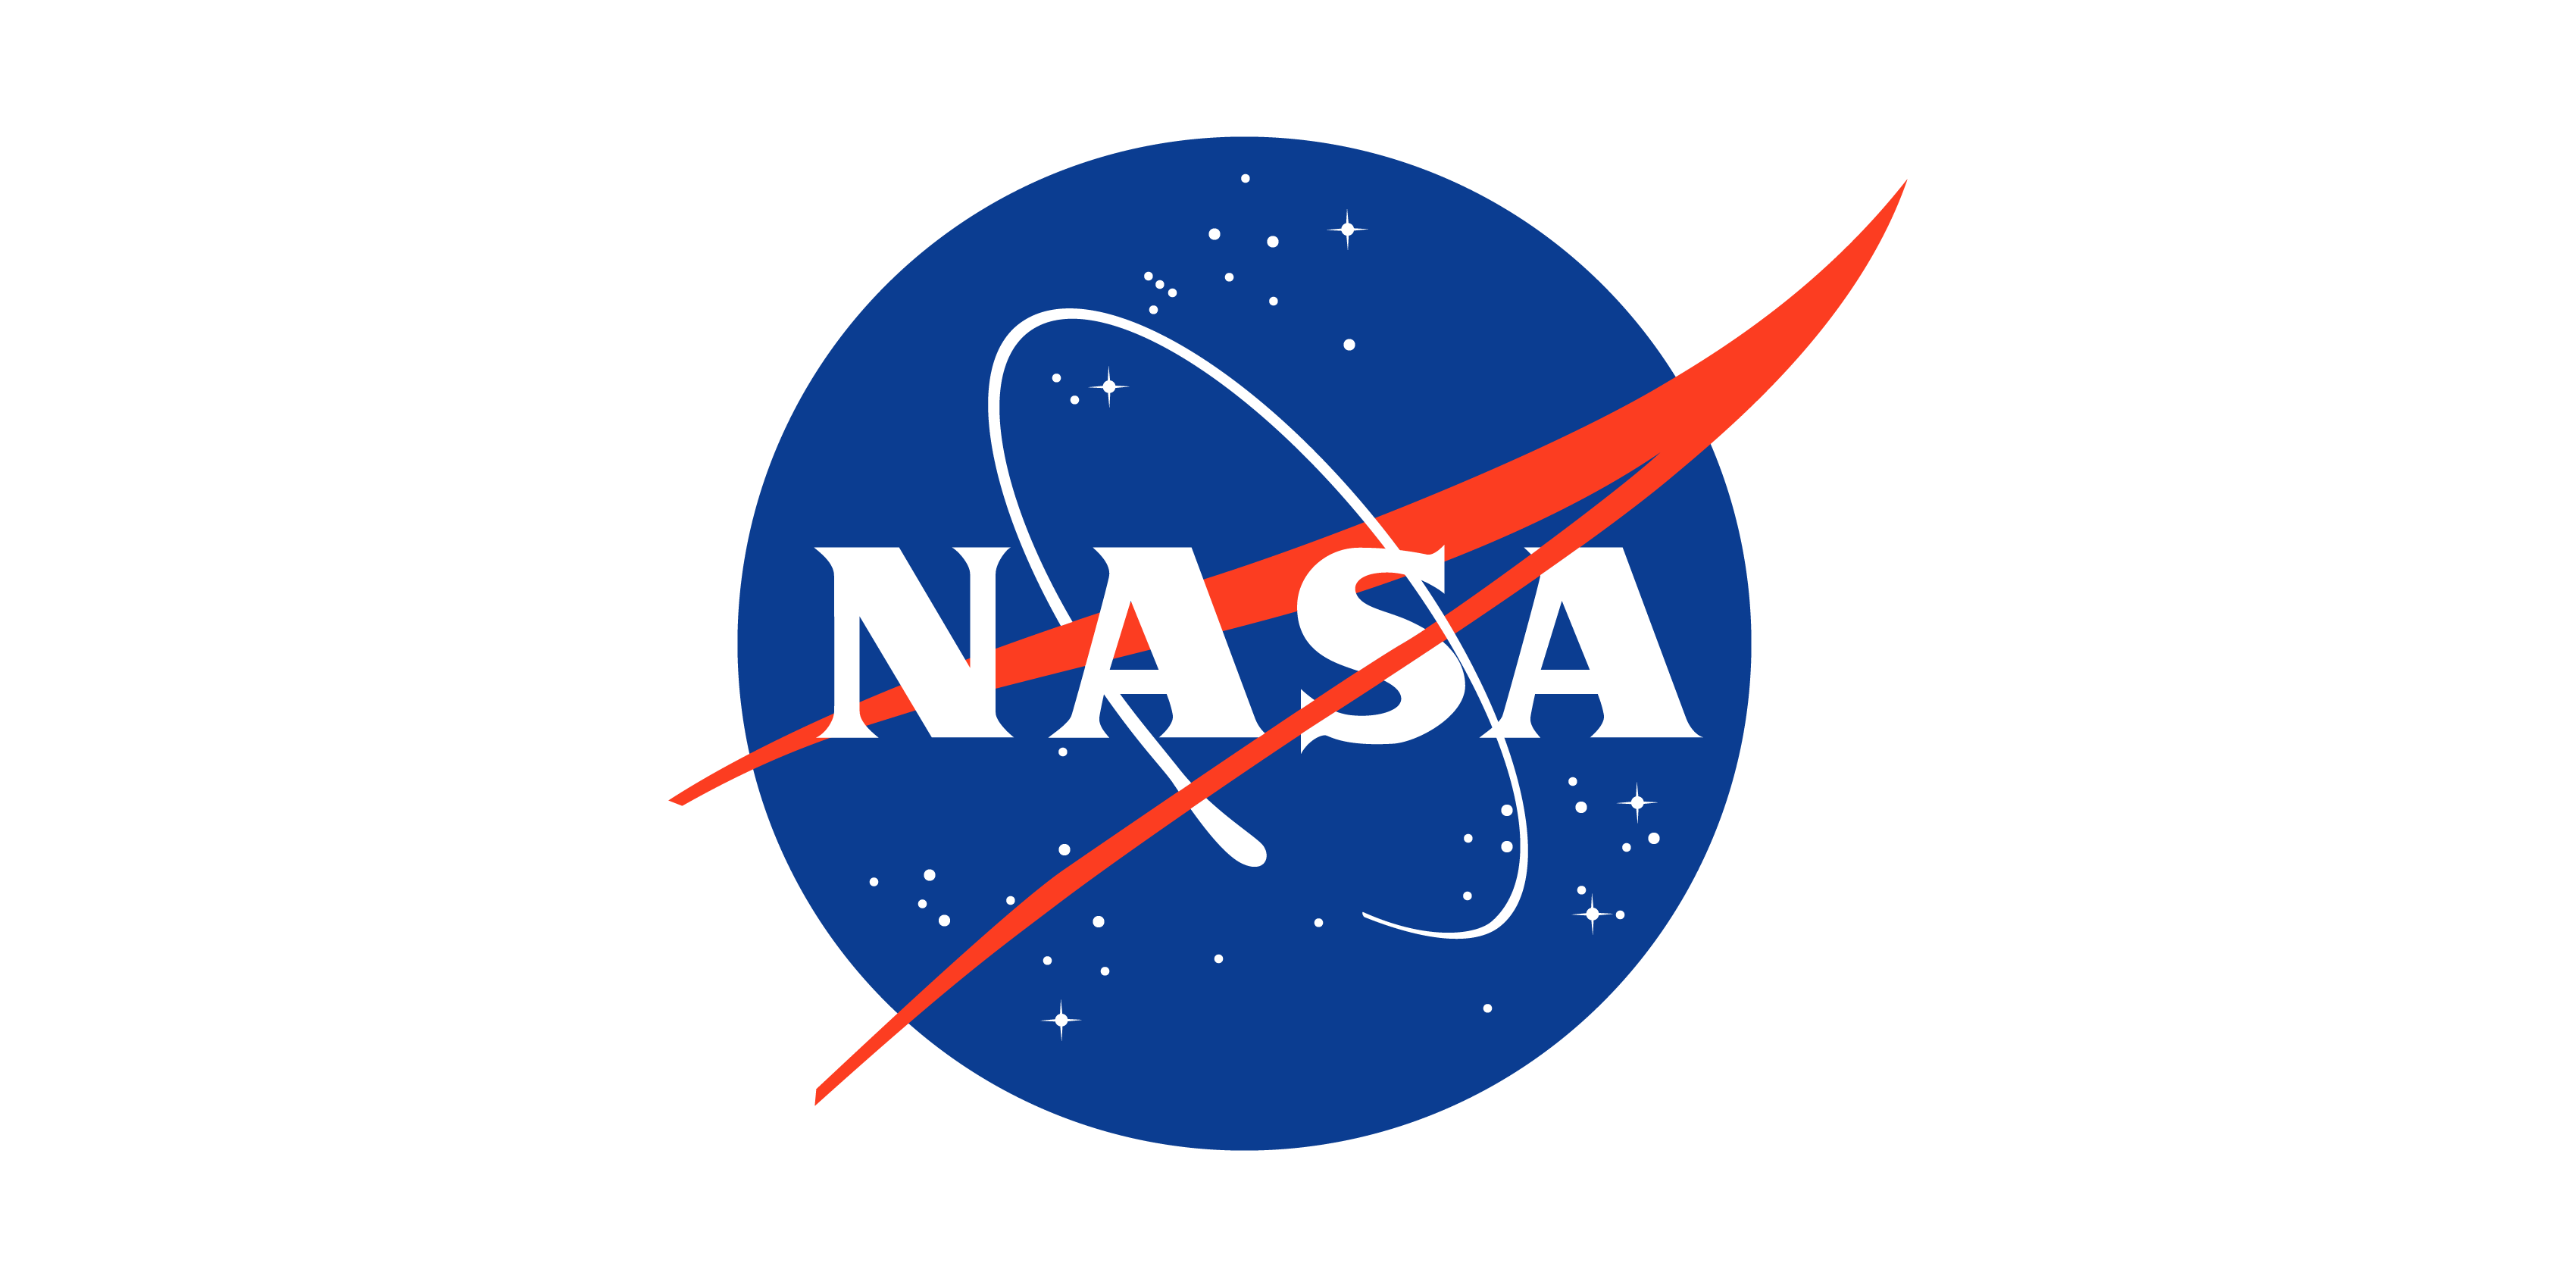 NASAs logo